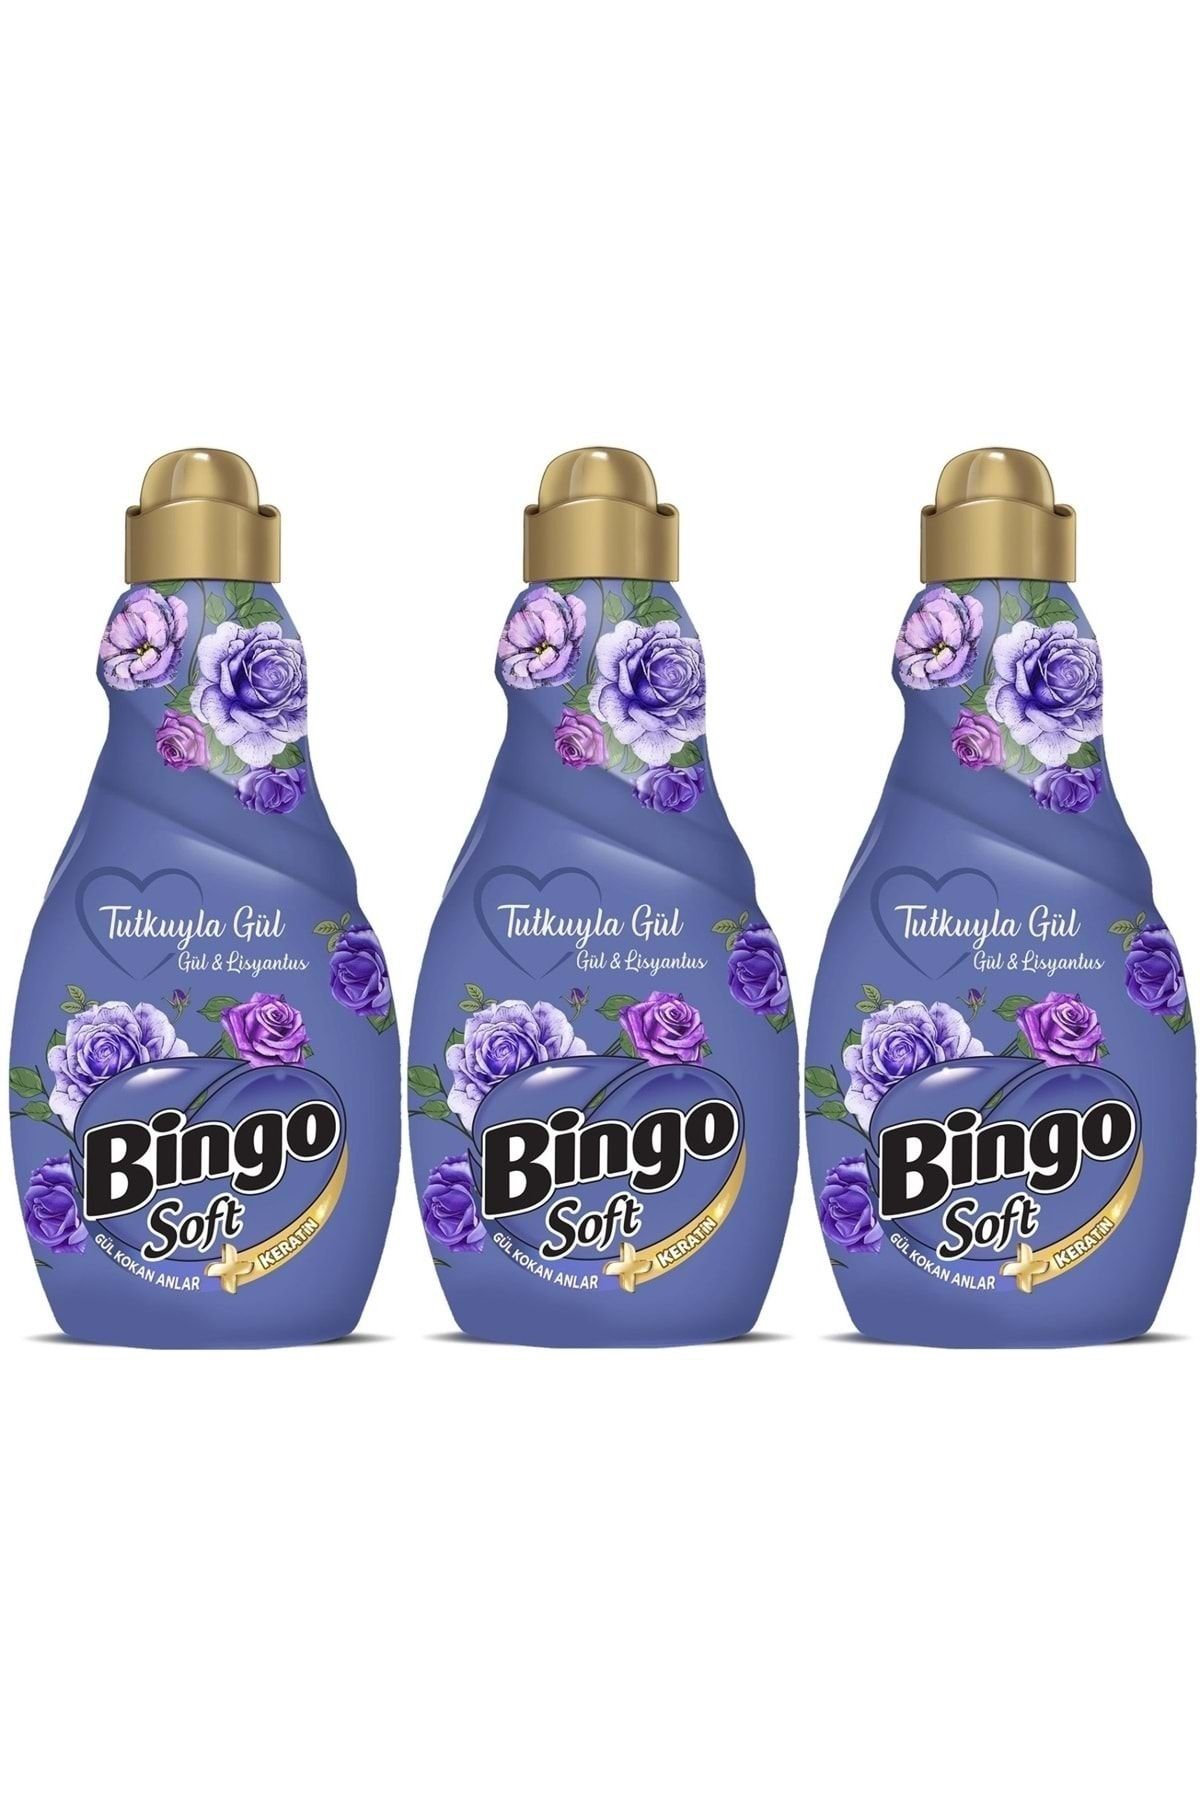 Bingo Soft Çamaşır Yumuşatıcı Konsantre 1440ml Tutkuyla Gül (gül & Lisyantus) (3 Lü Set)